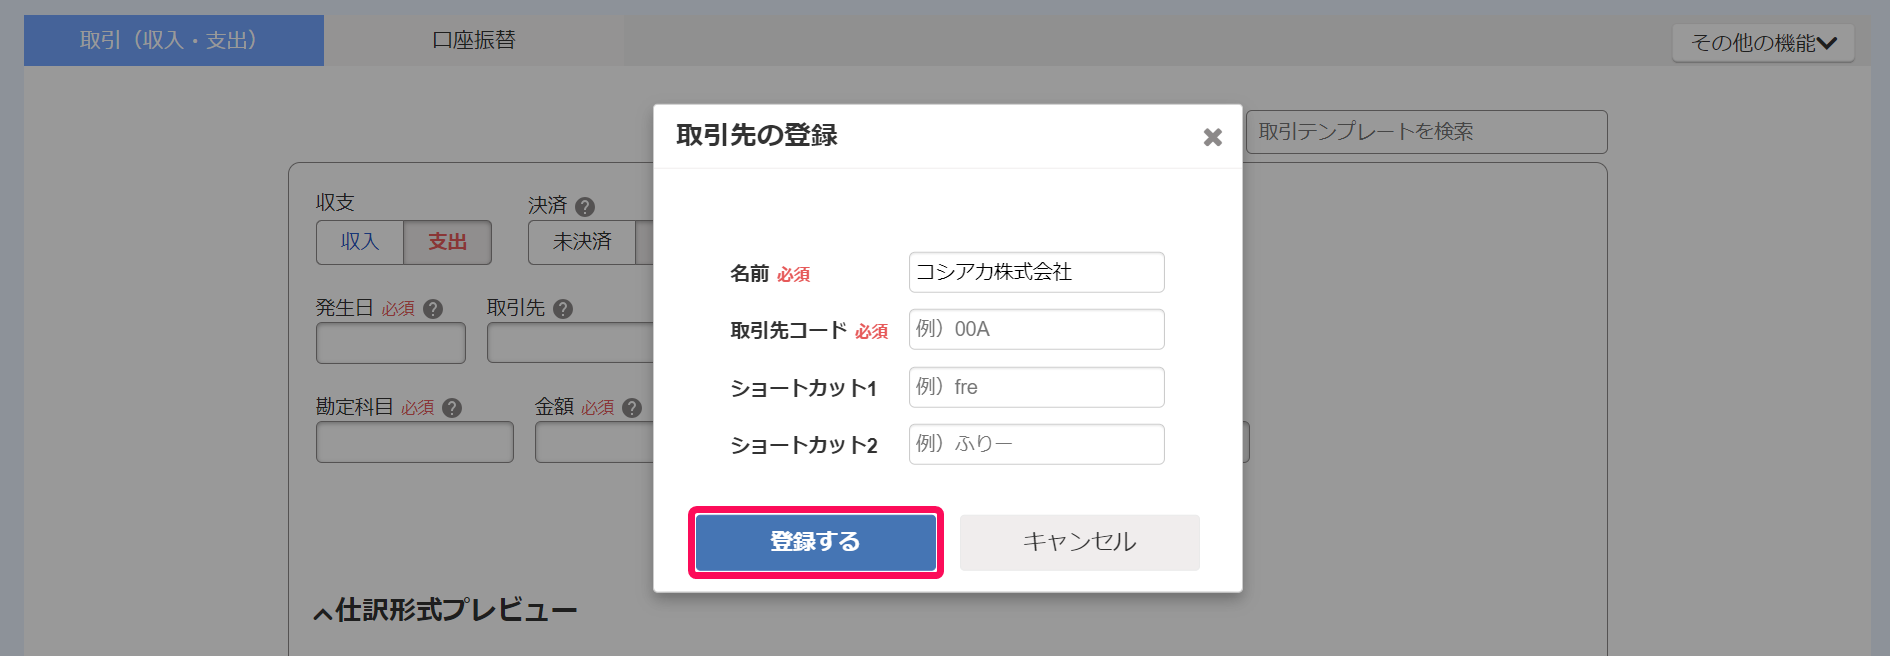 取引先の登録画面で登録するボタンを指し示しているスクリーンショット